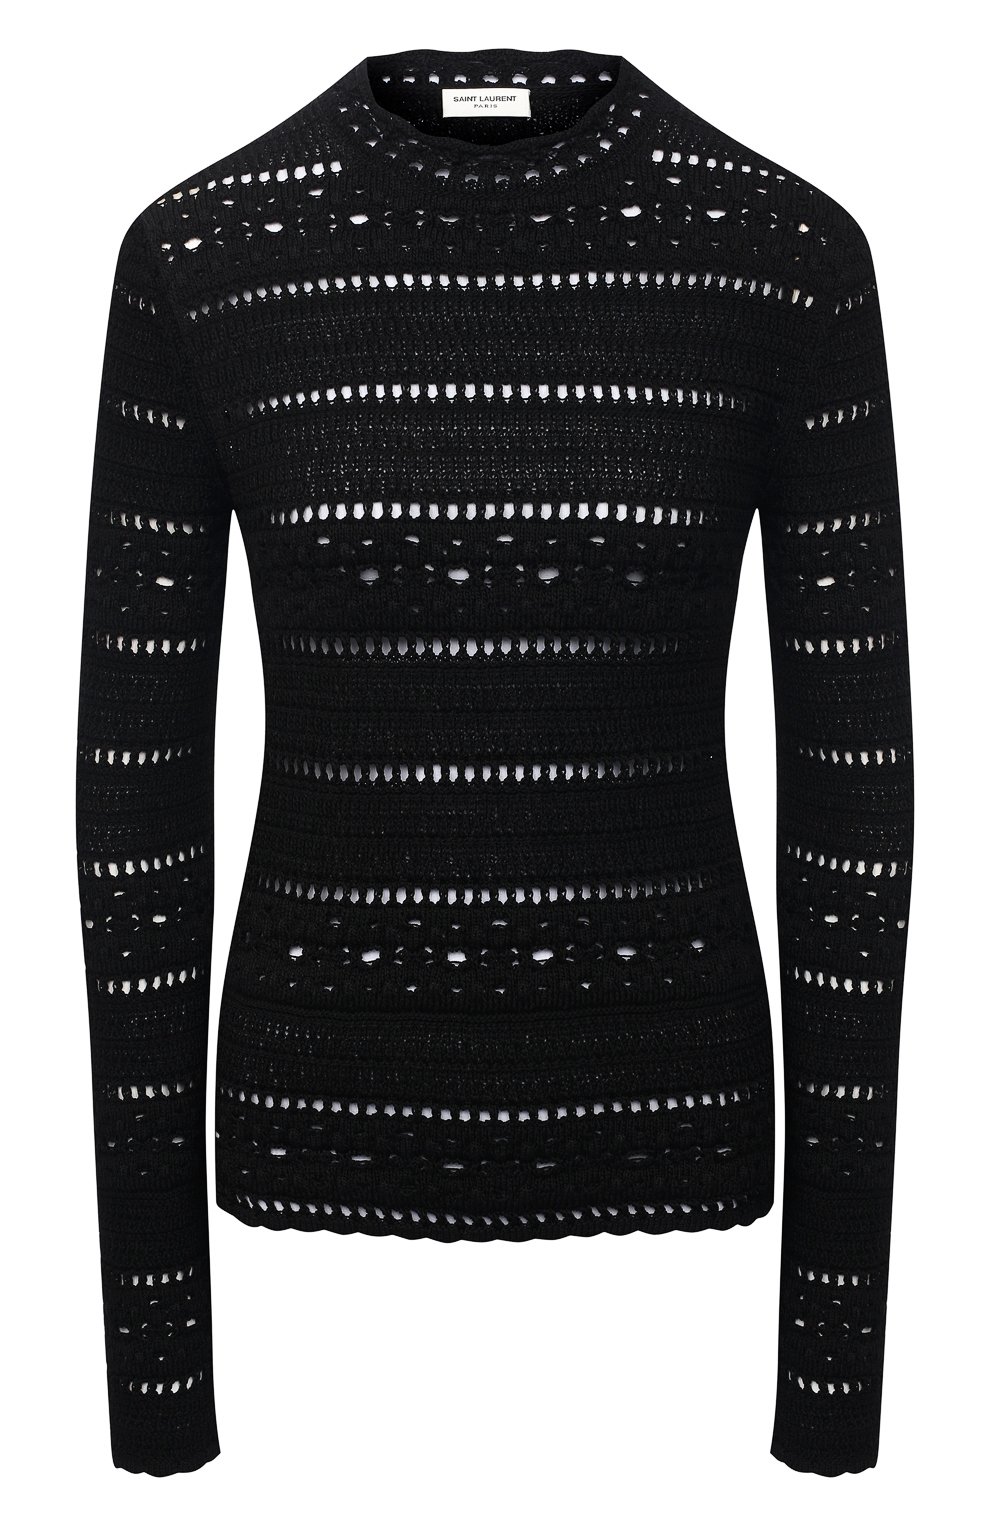 Трикотаж Saint Laurent, Хлопковый пуловер Saint Laurent, Италия, Чёрный, Хлопок: 100%;, 11600615  - купить